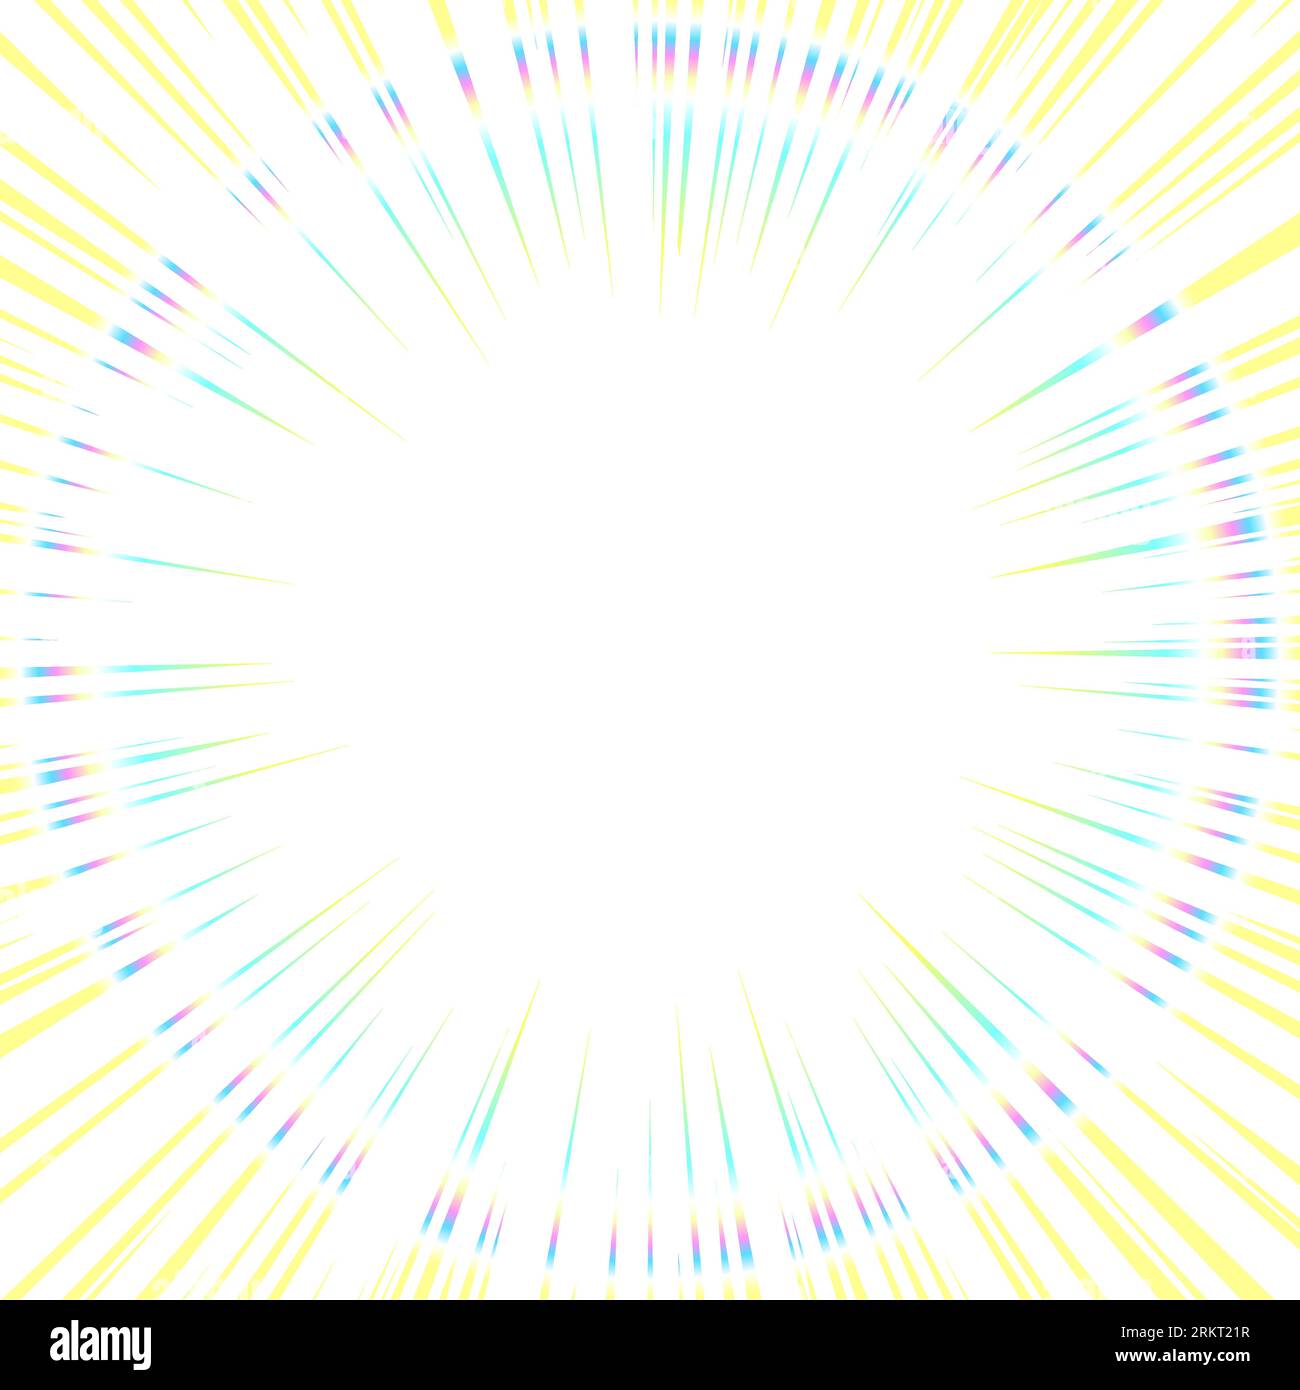 Konzentrierte Linie aus gelbem Licht mit schillernden Ringen. Quadratisches Hintergrund-Illustrationsmaterial mit gezeichneten Linien mit Cartoon-Effekt. Stock Vektor